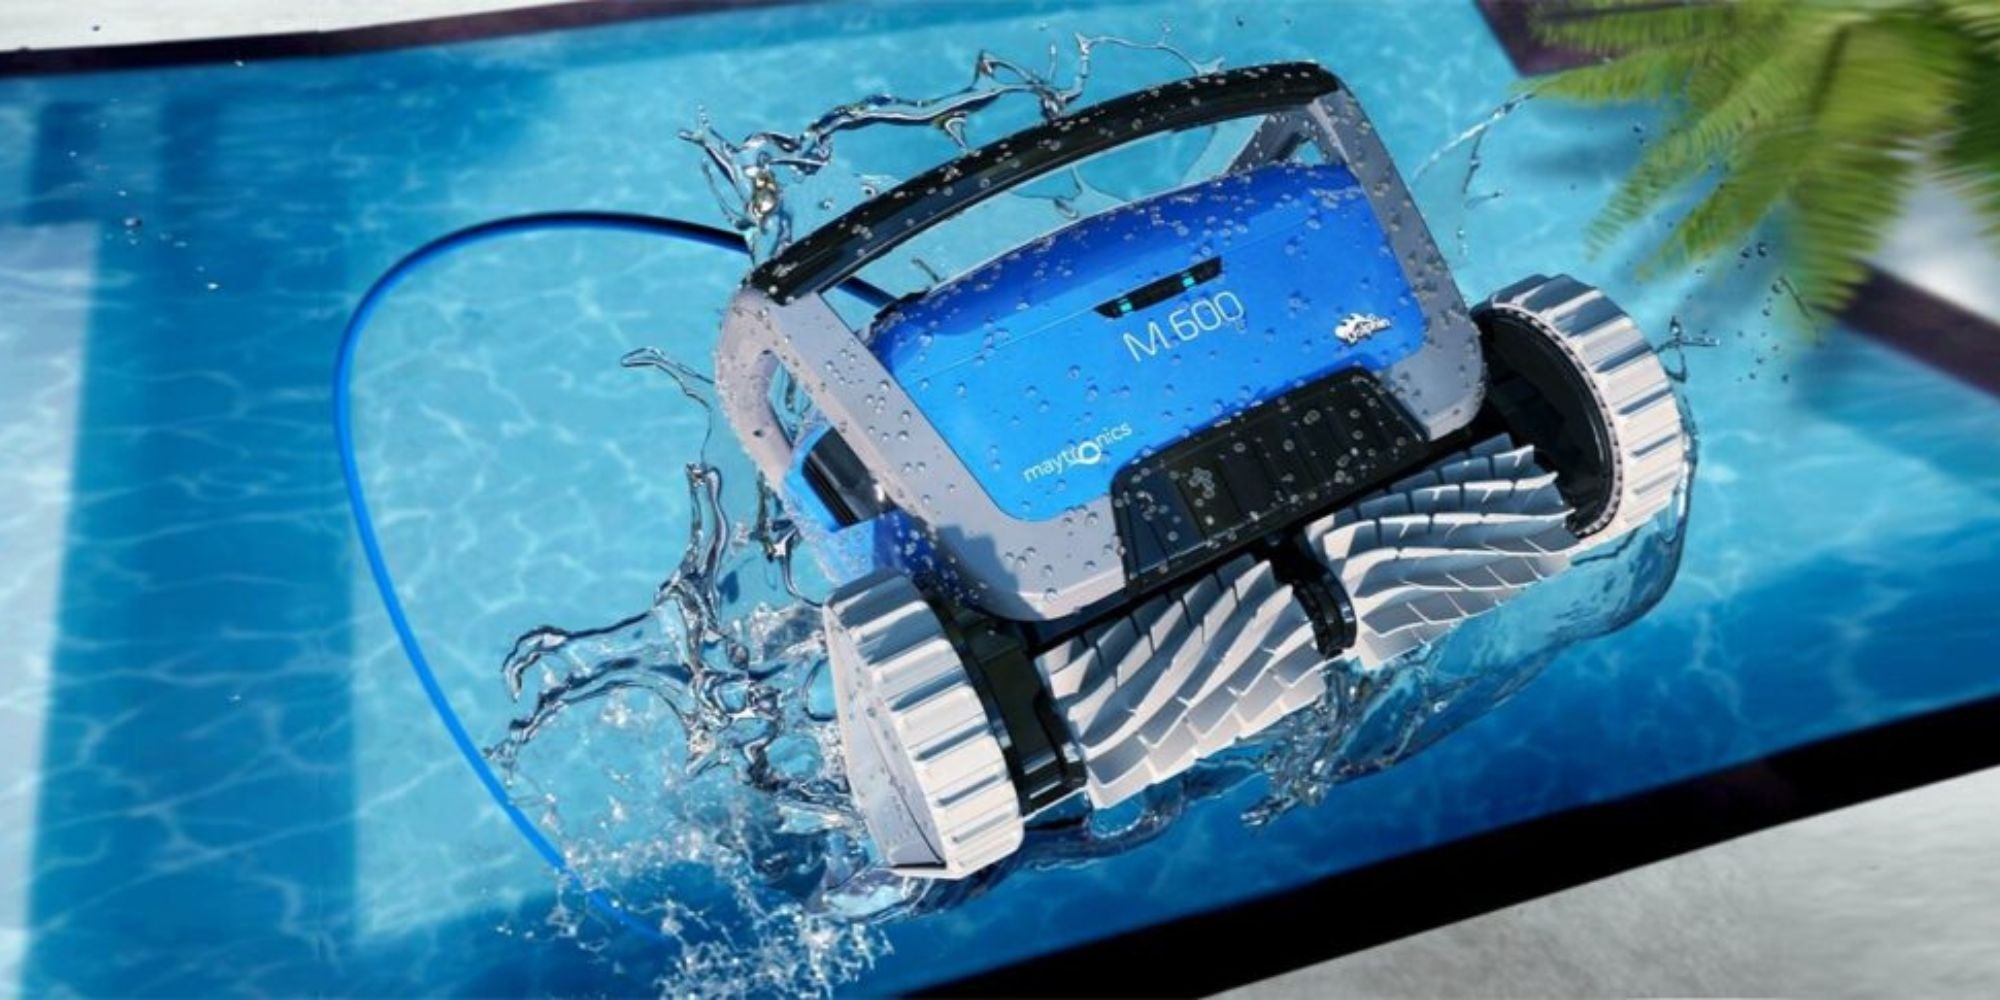 Tuyau de nettoyage automatique pour piscine, facile à utiliser